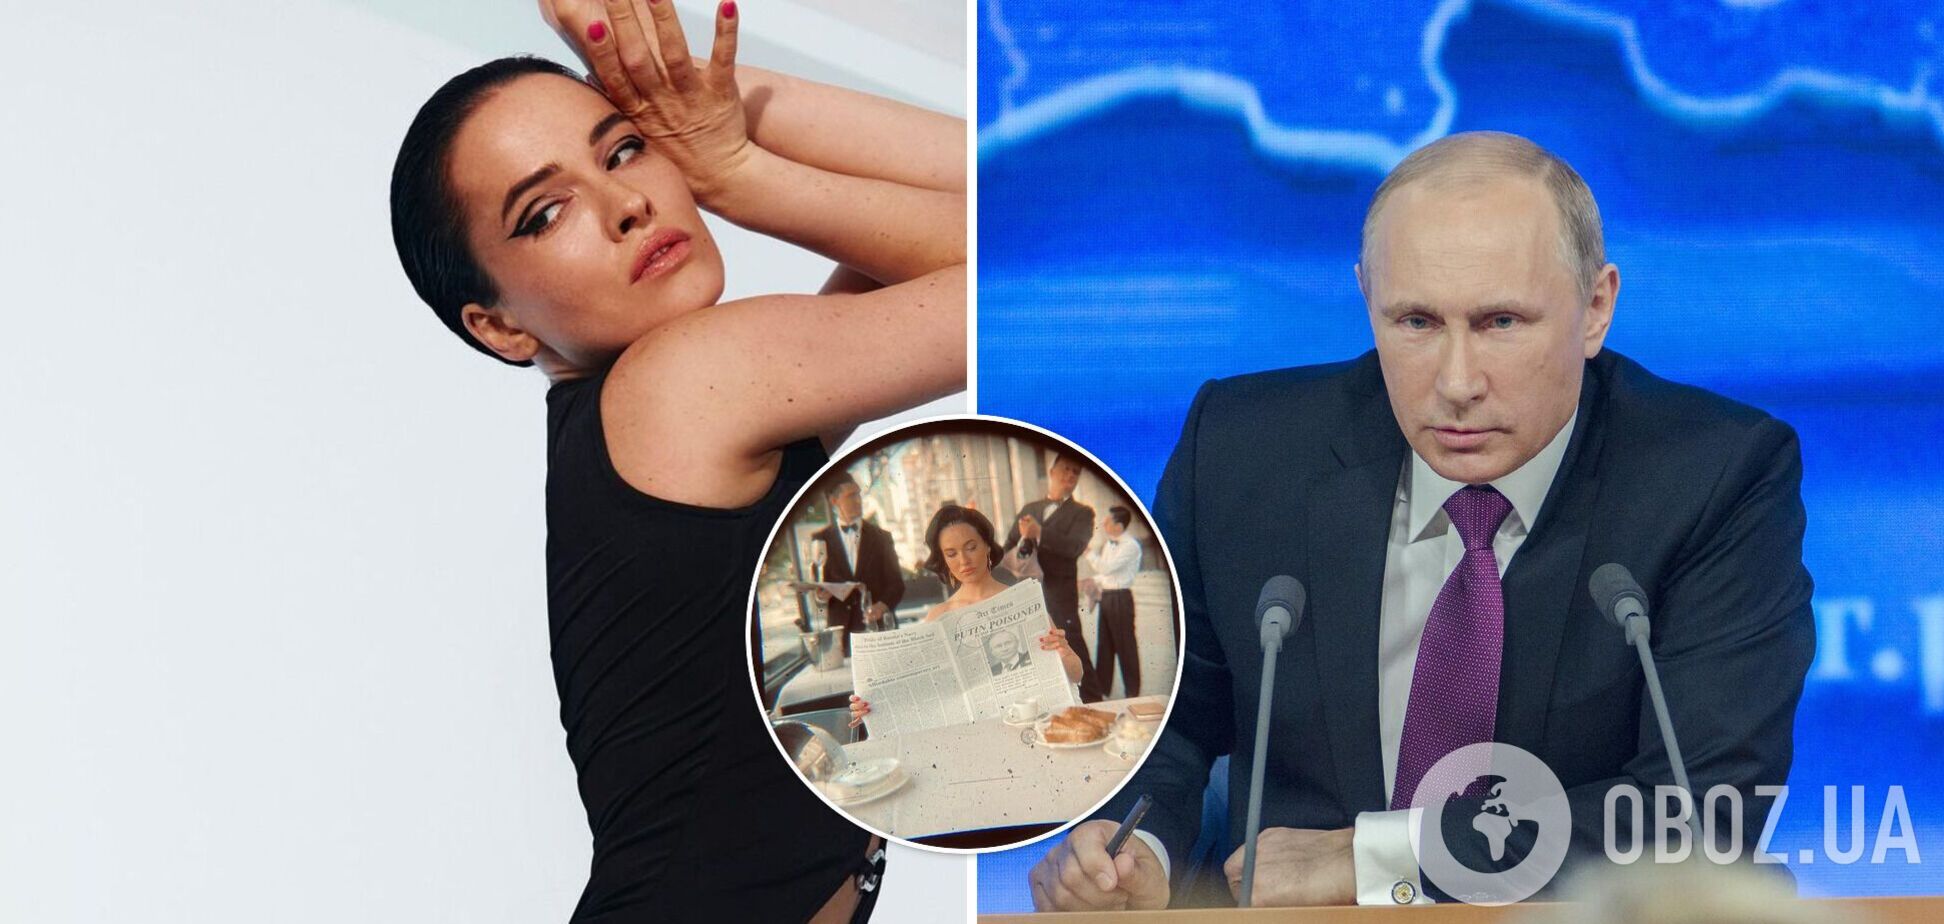 'Путина отравили': Астафьева заинтриговала фото и призналась, что ее мечты сбываются